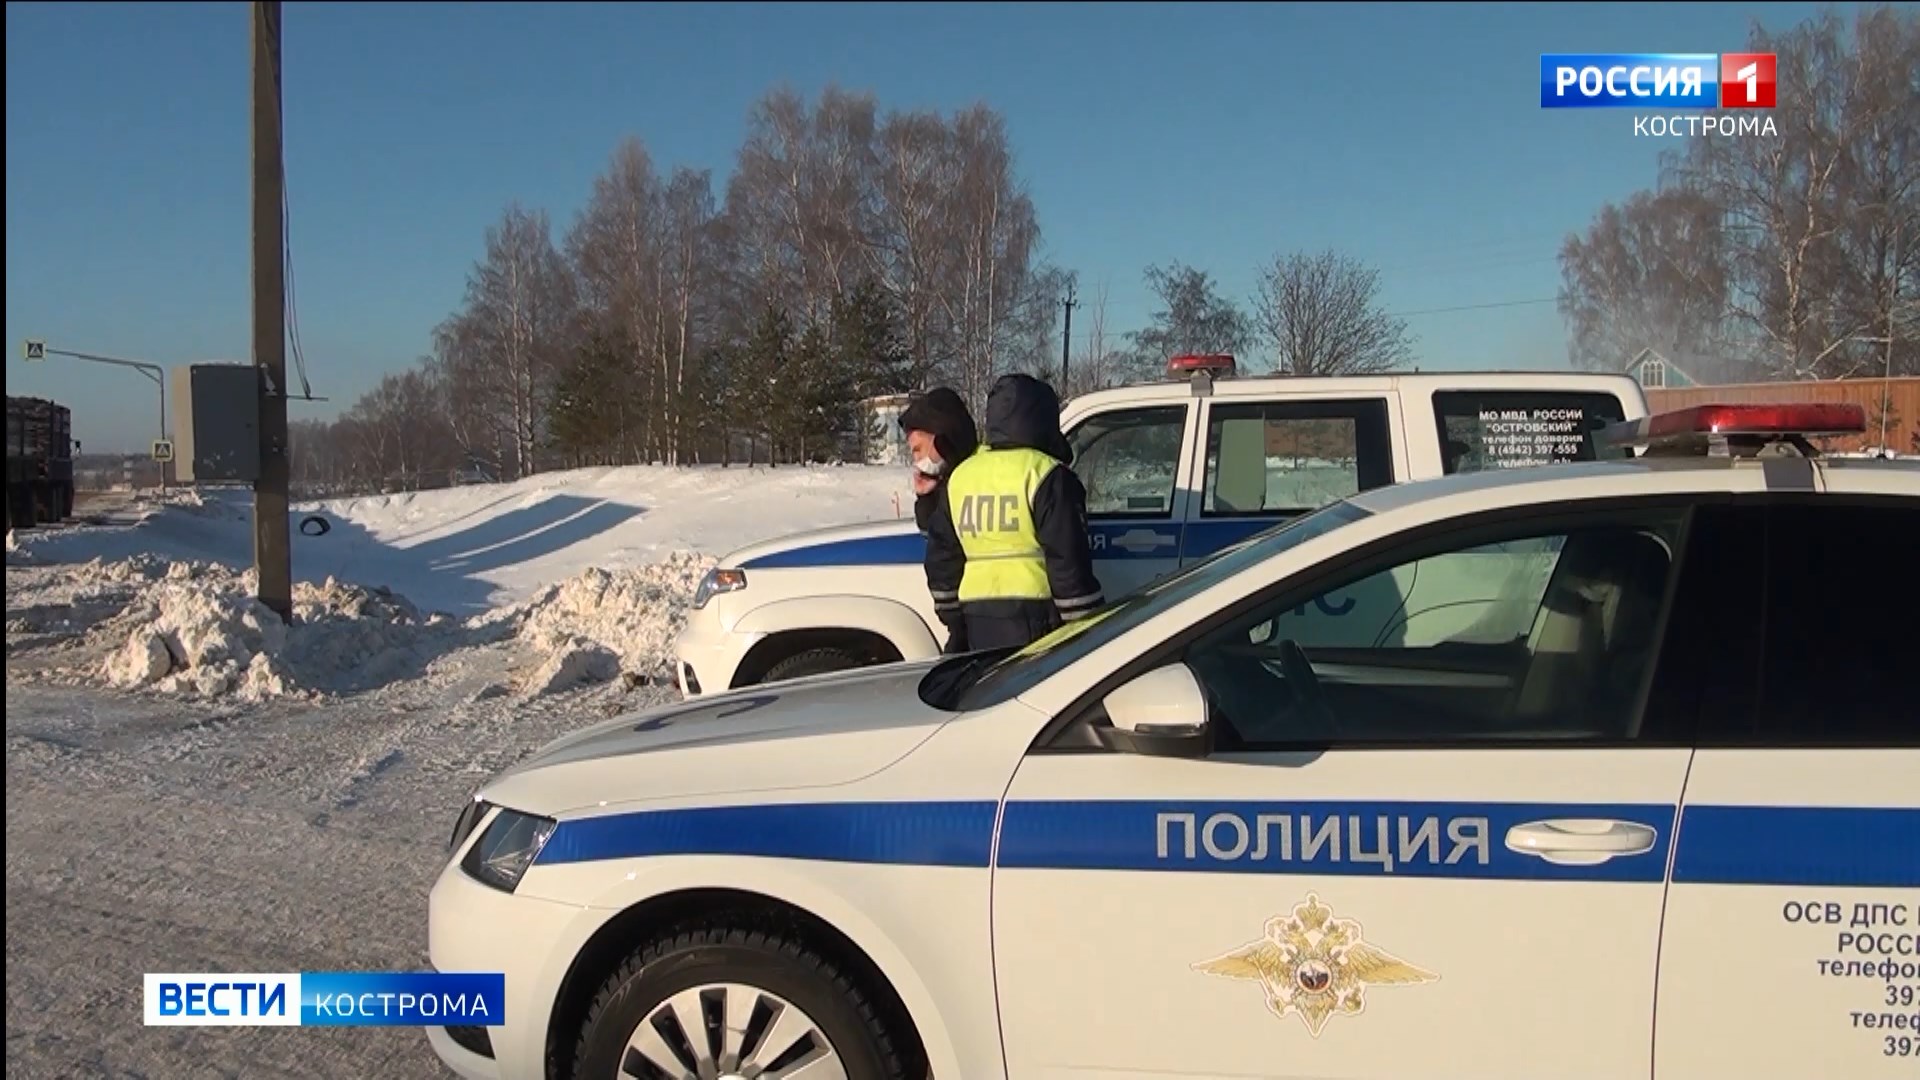 Пьяный житель Костромы атаковал гигантский чебурек: видео // Новости НТВ